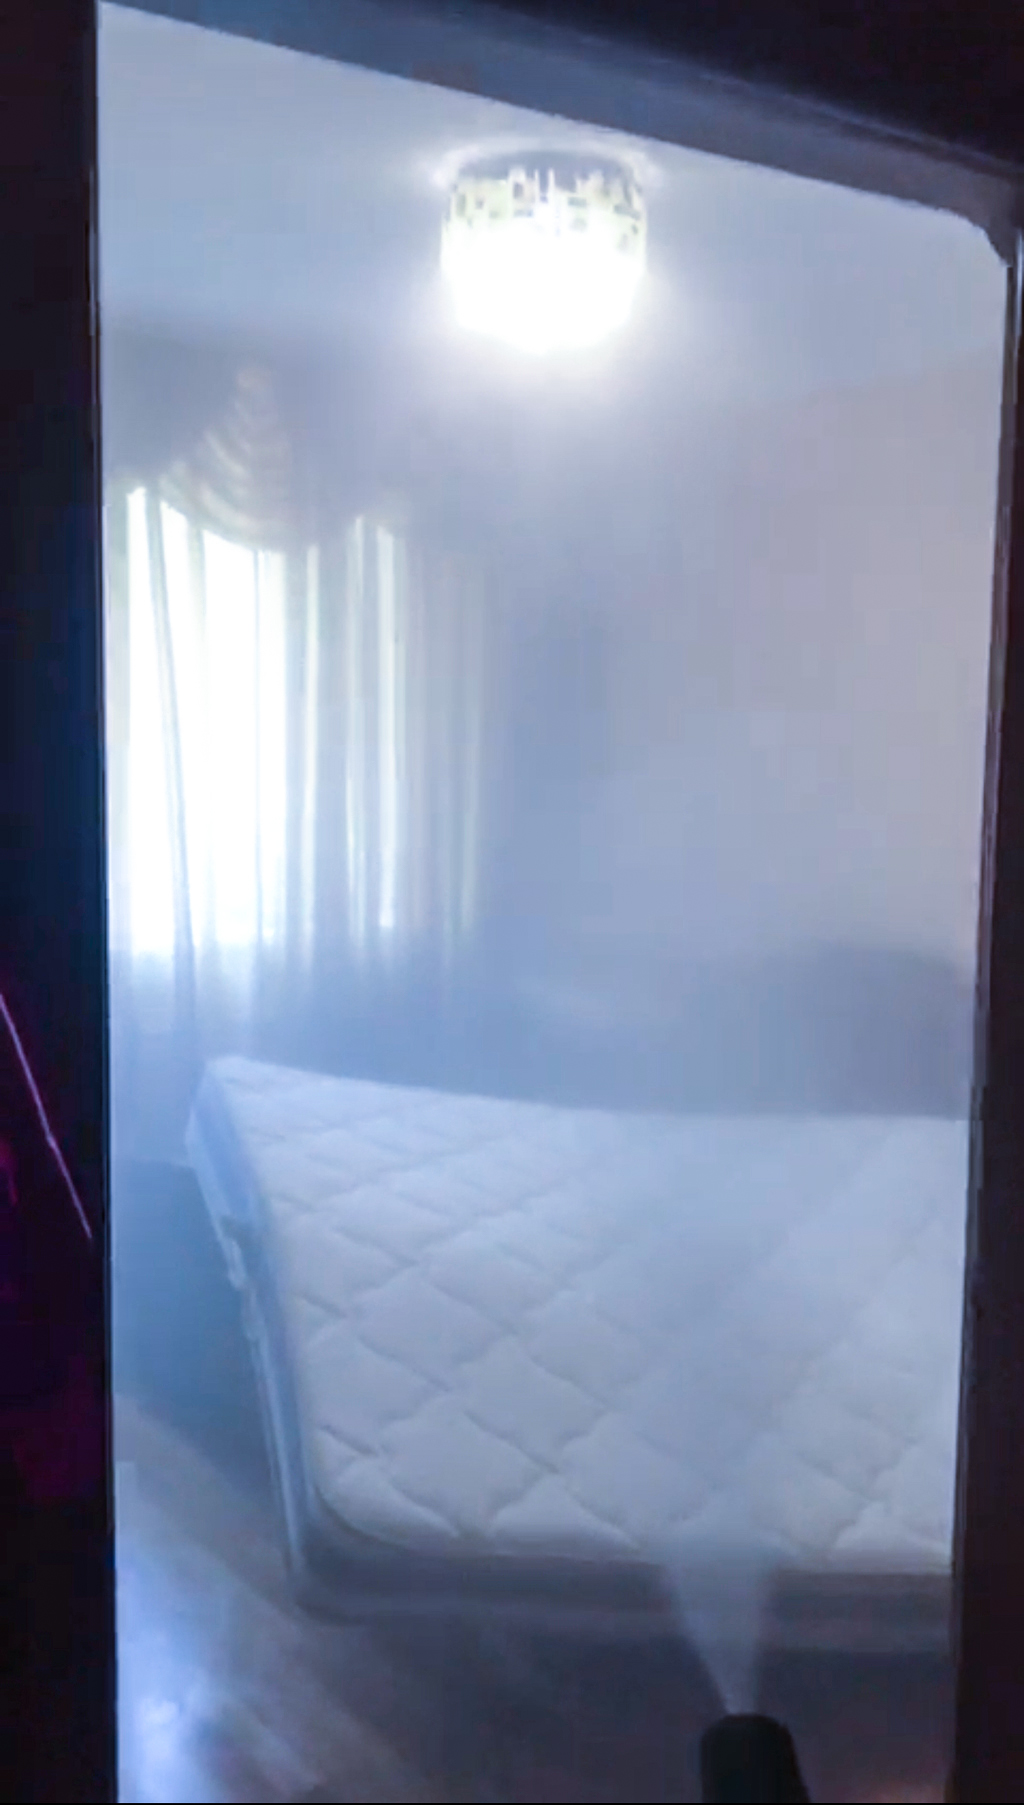 уничтожение постельных домашних клопов в Саратове методом холодного тумана